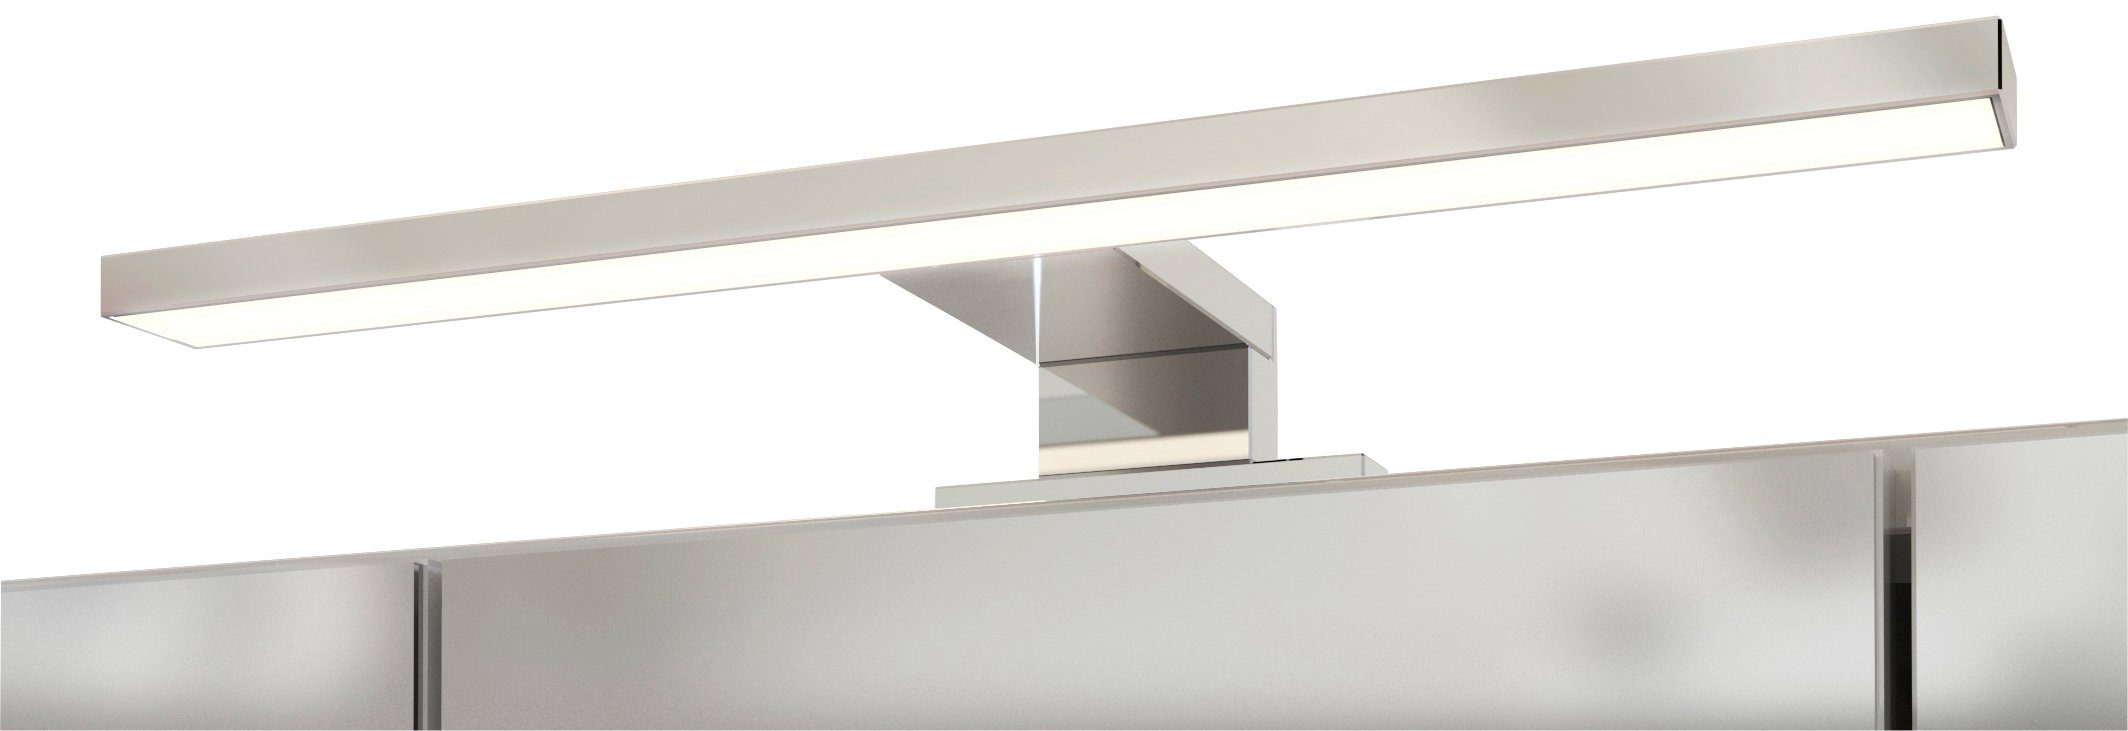 HELD MÖBEL Spiegelschrank Livorno Inklusive weiß LED-Beleuchtung | weiß/weiß